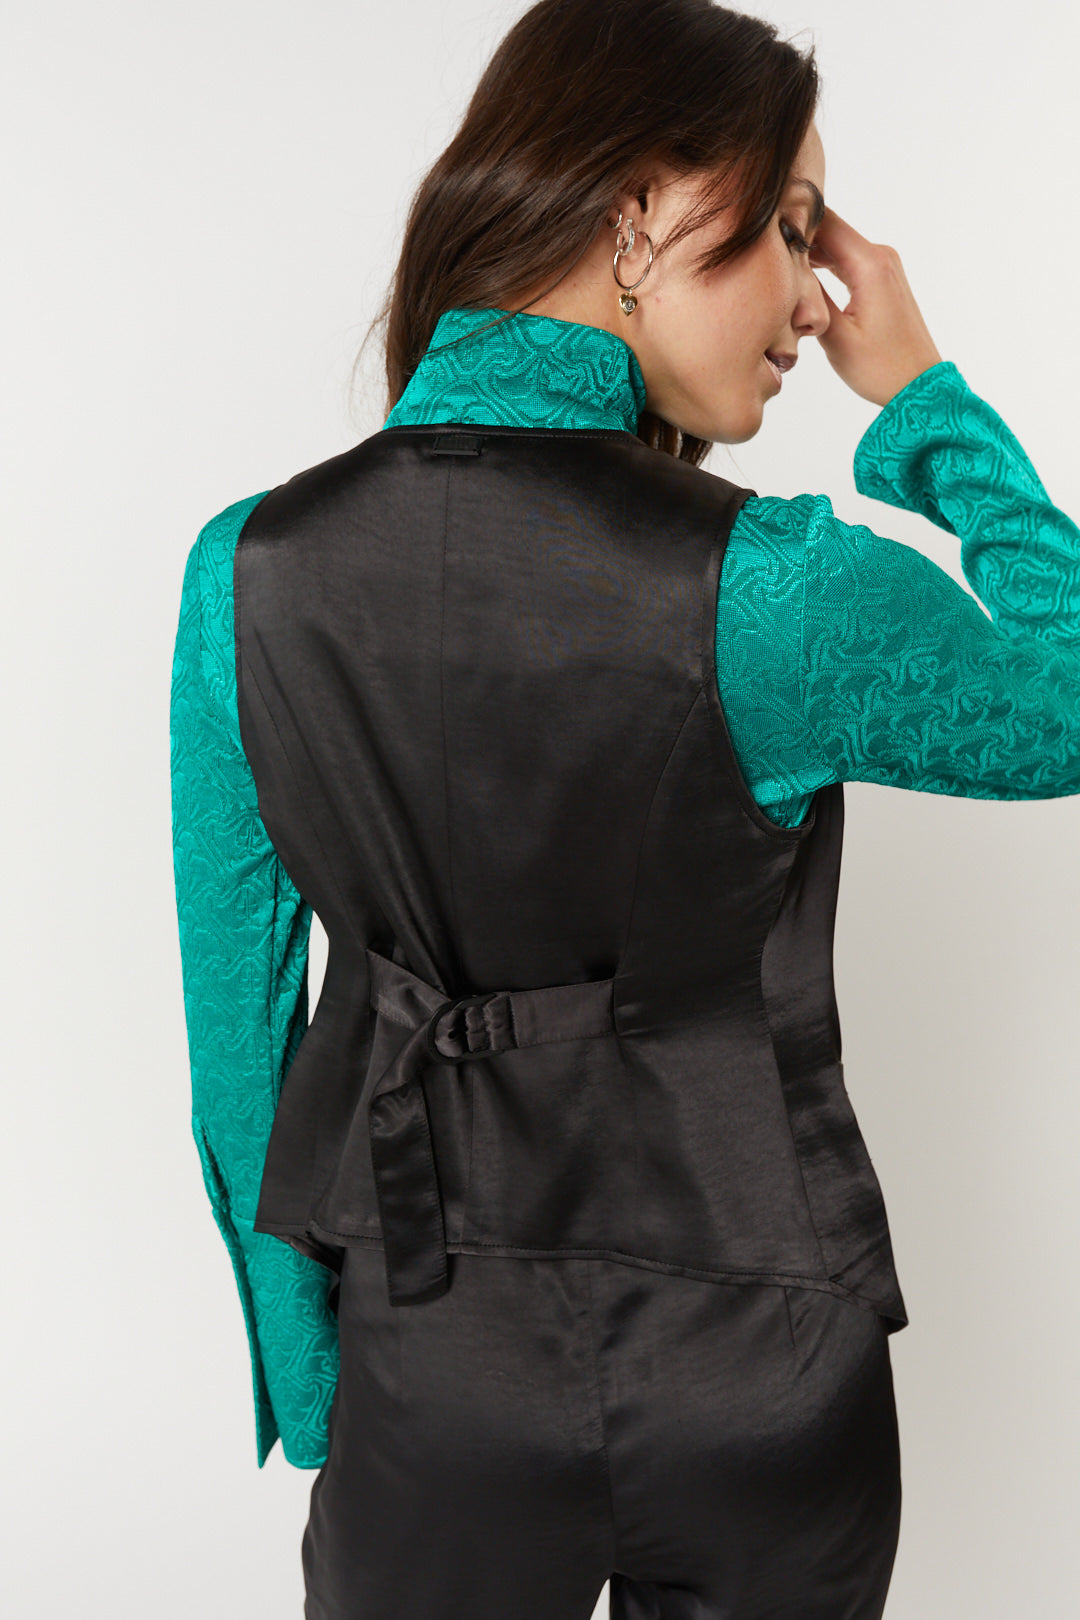 Black sleeveless jacket | Sundance